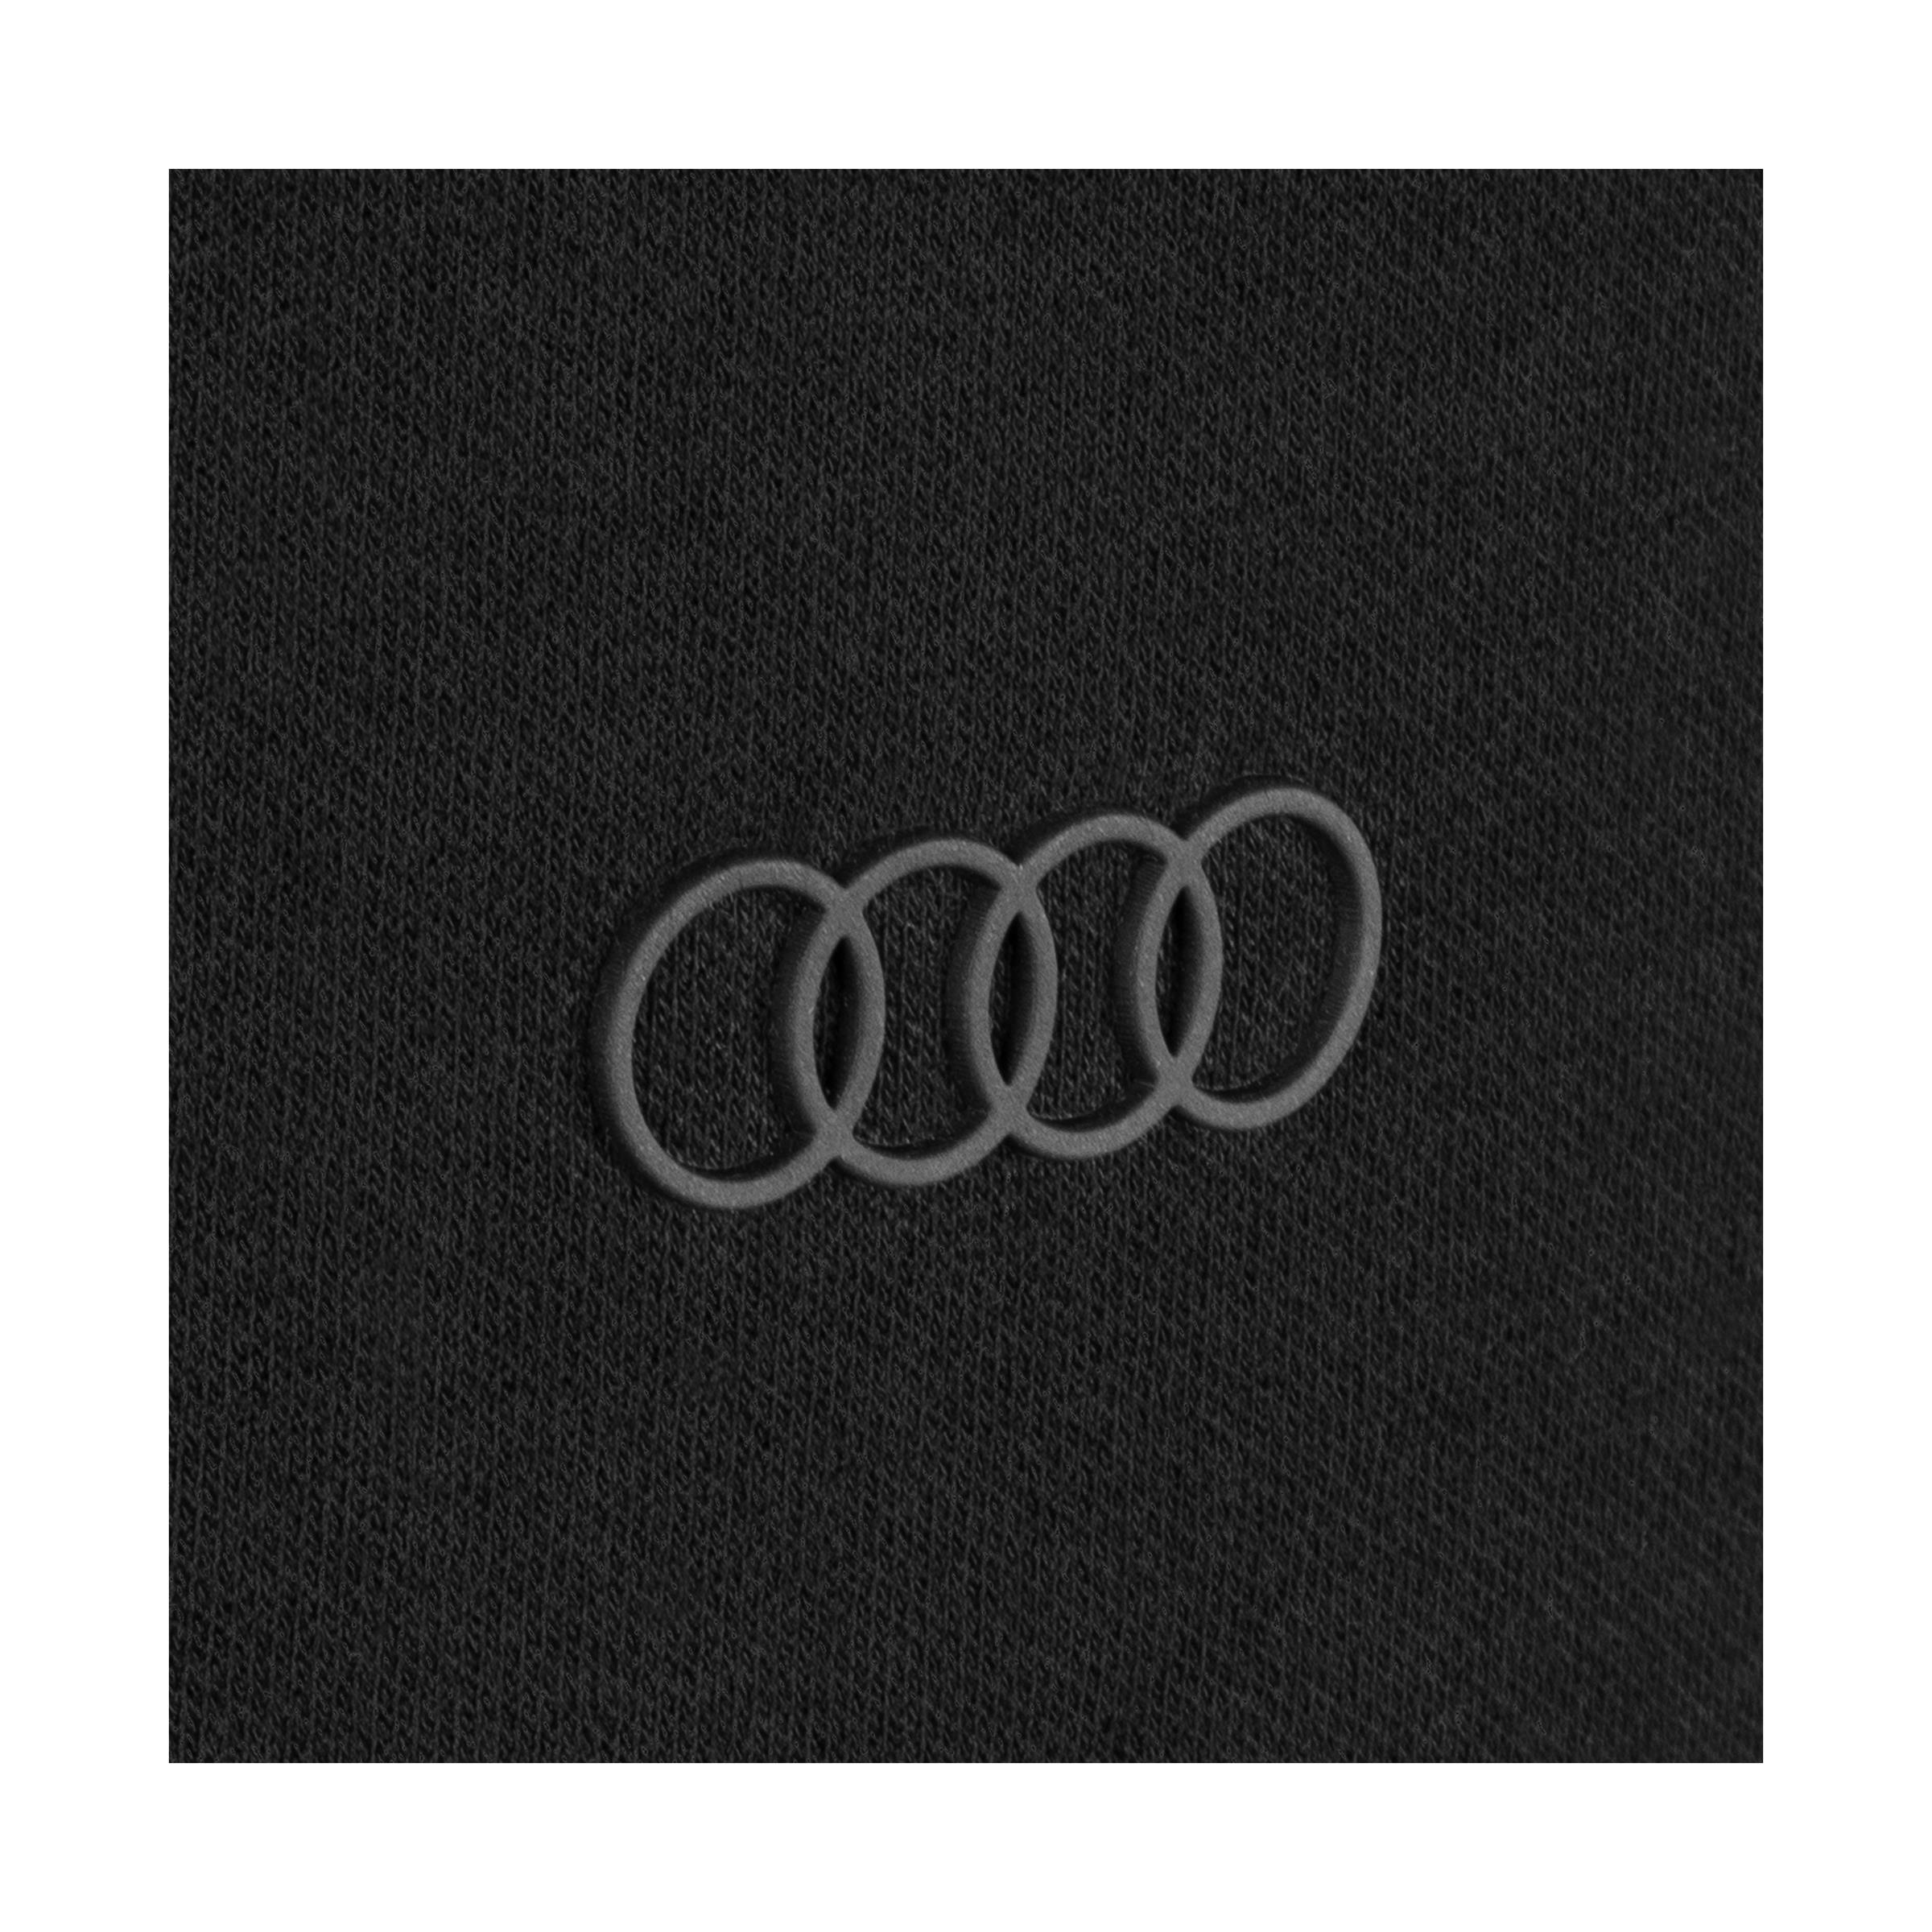 Original Audi Tec-Shirt, Herren, schwarz, Gr. XL